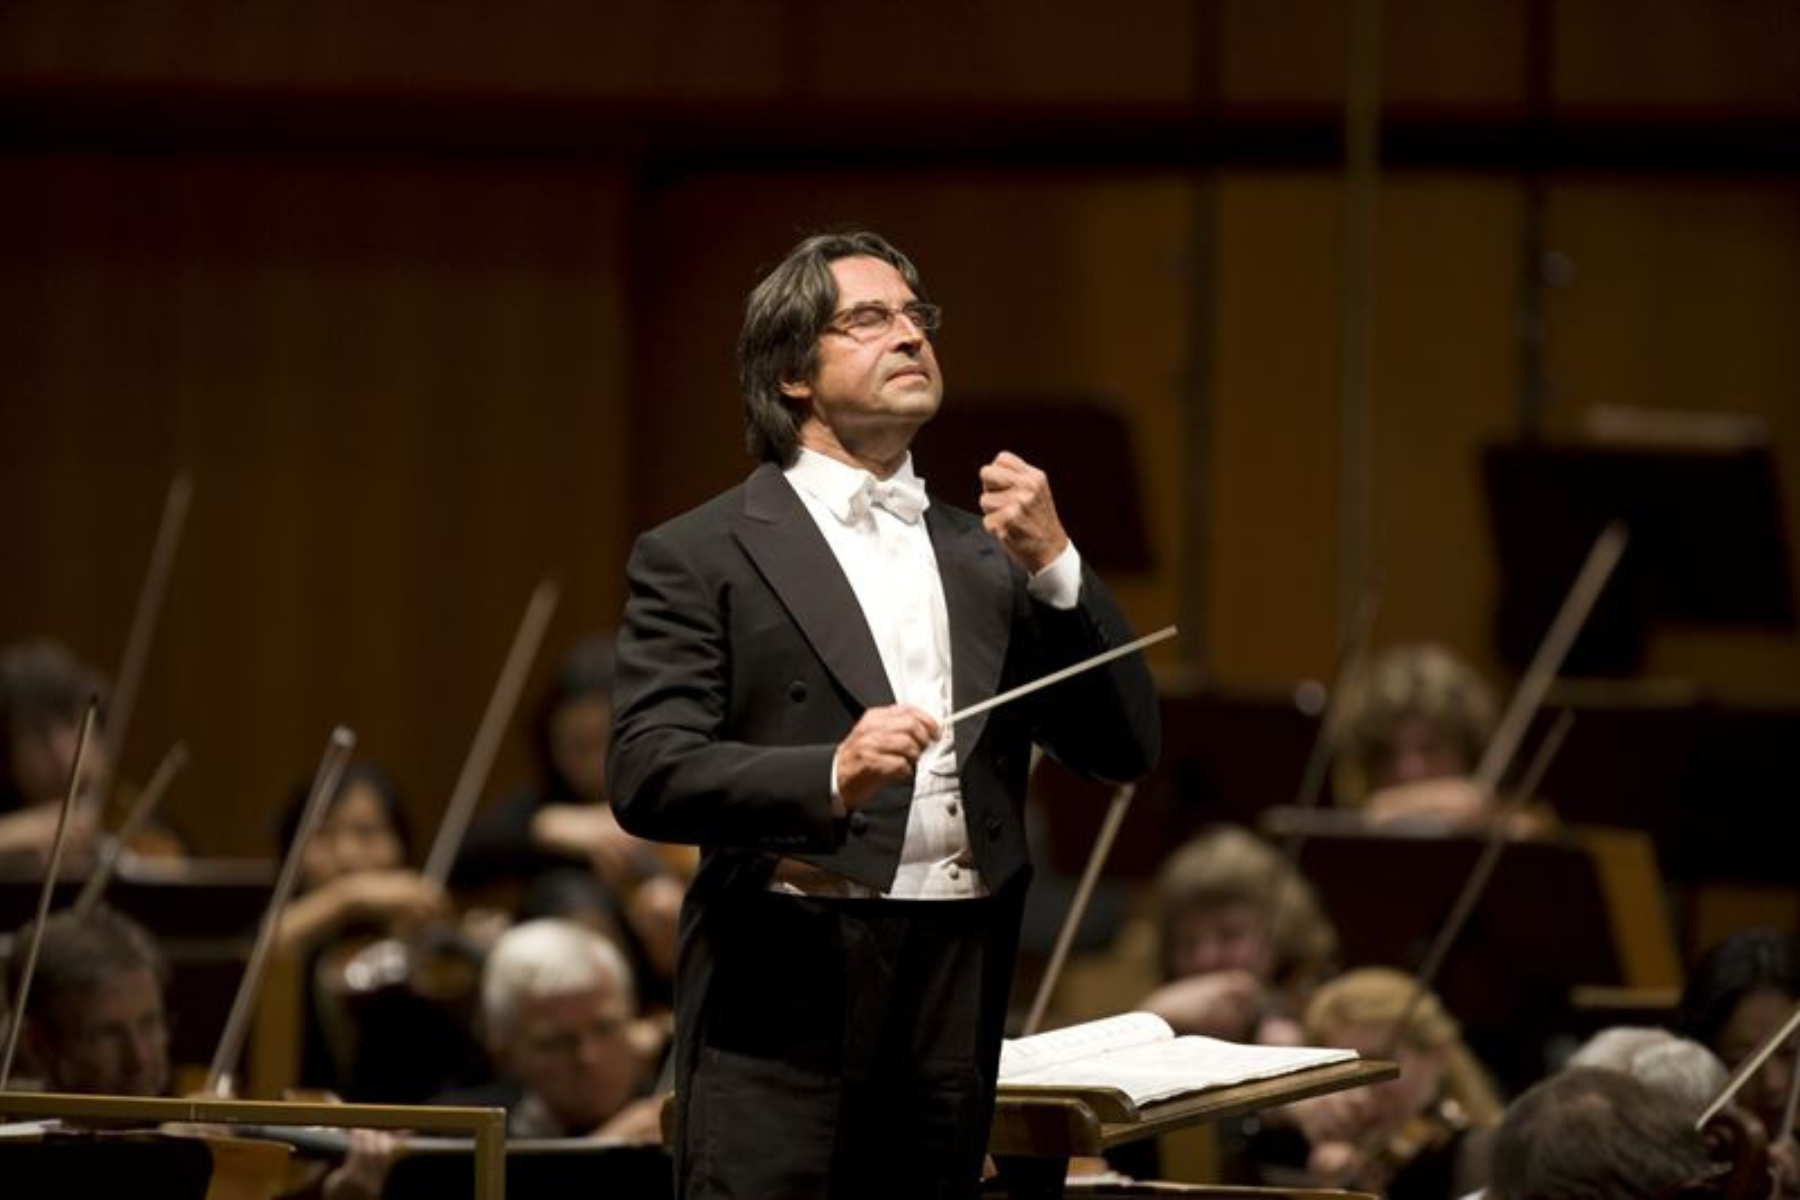 Du visar för närvarande Birgit Nilsson Prize 2011 tilldelas Riccardo Muti